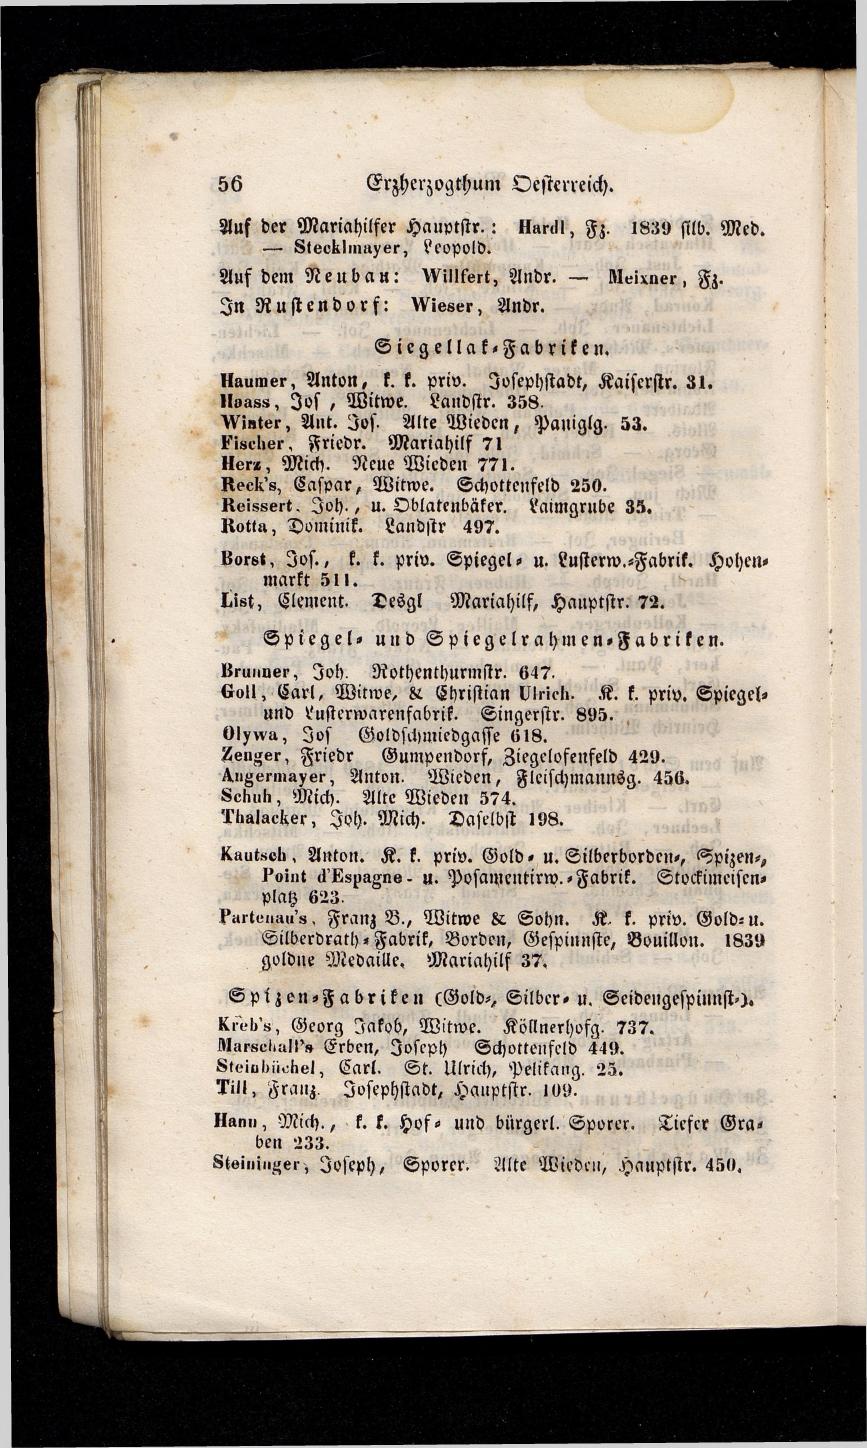 Grosses Adressbuch der Kaufleute. No. 13. Oesterreich ober u. unter der Enns 1844 - Seite 60